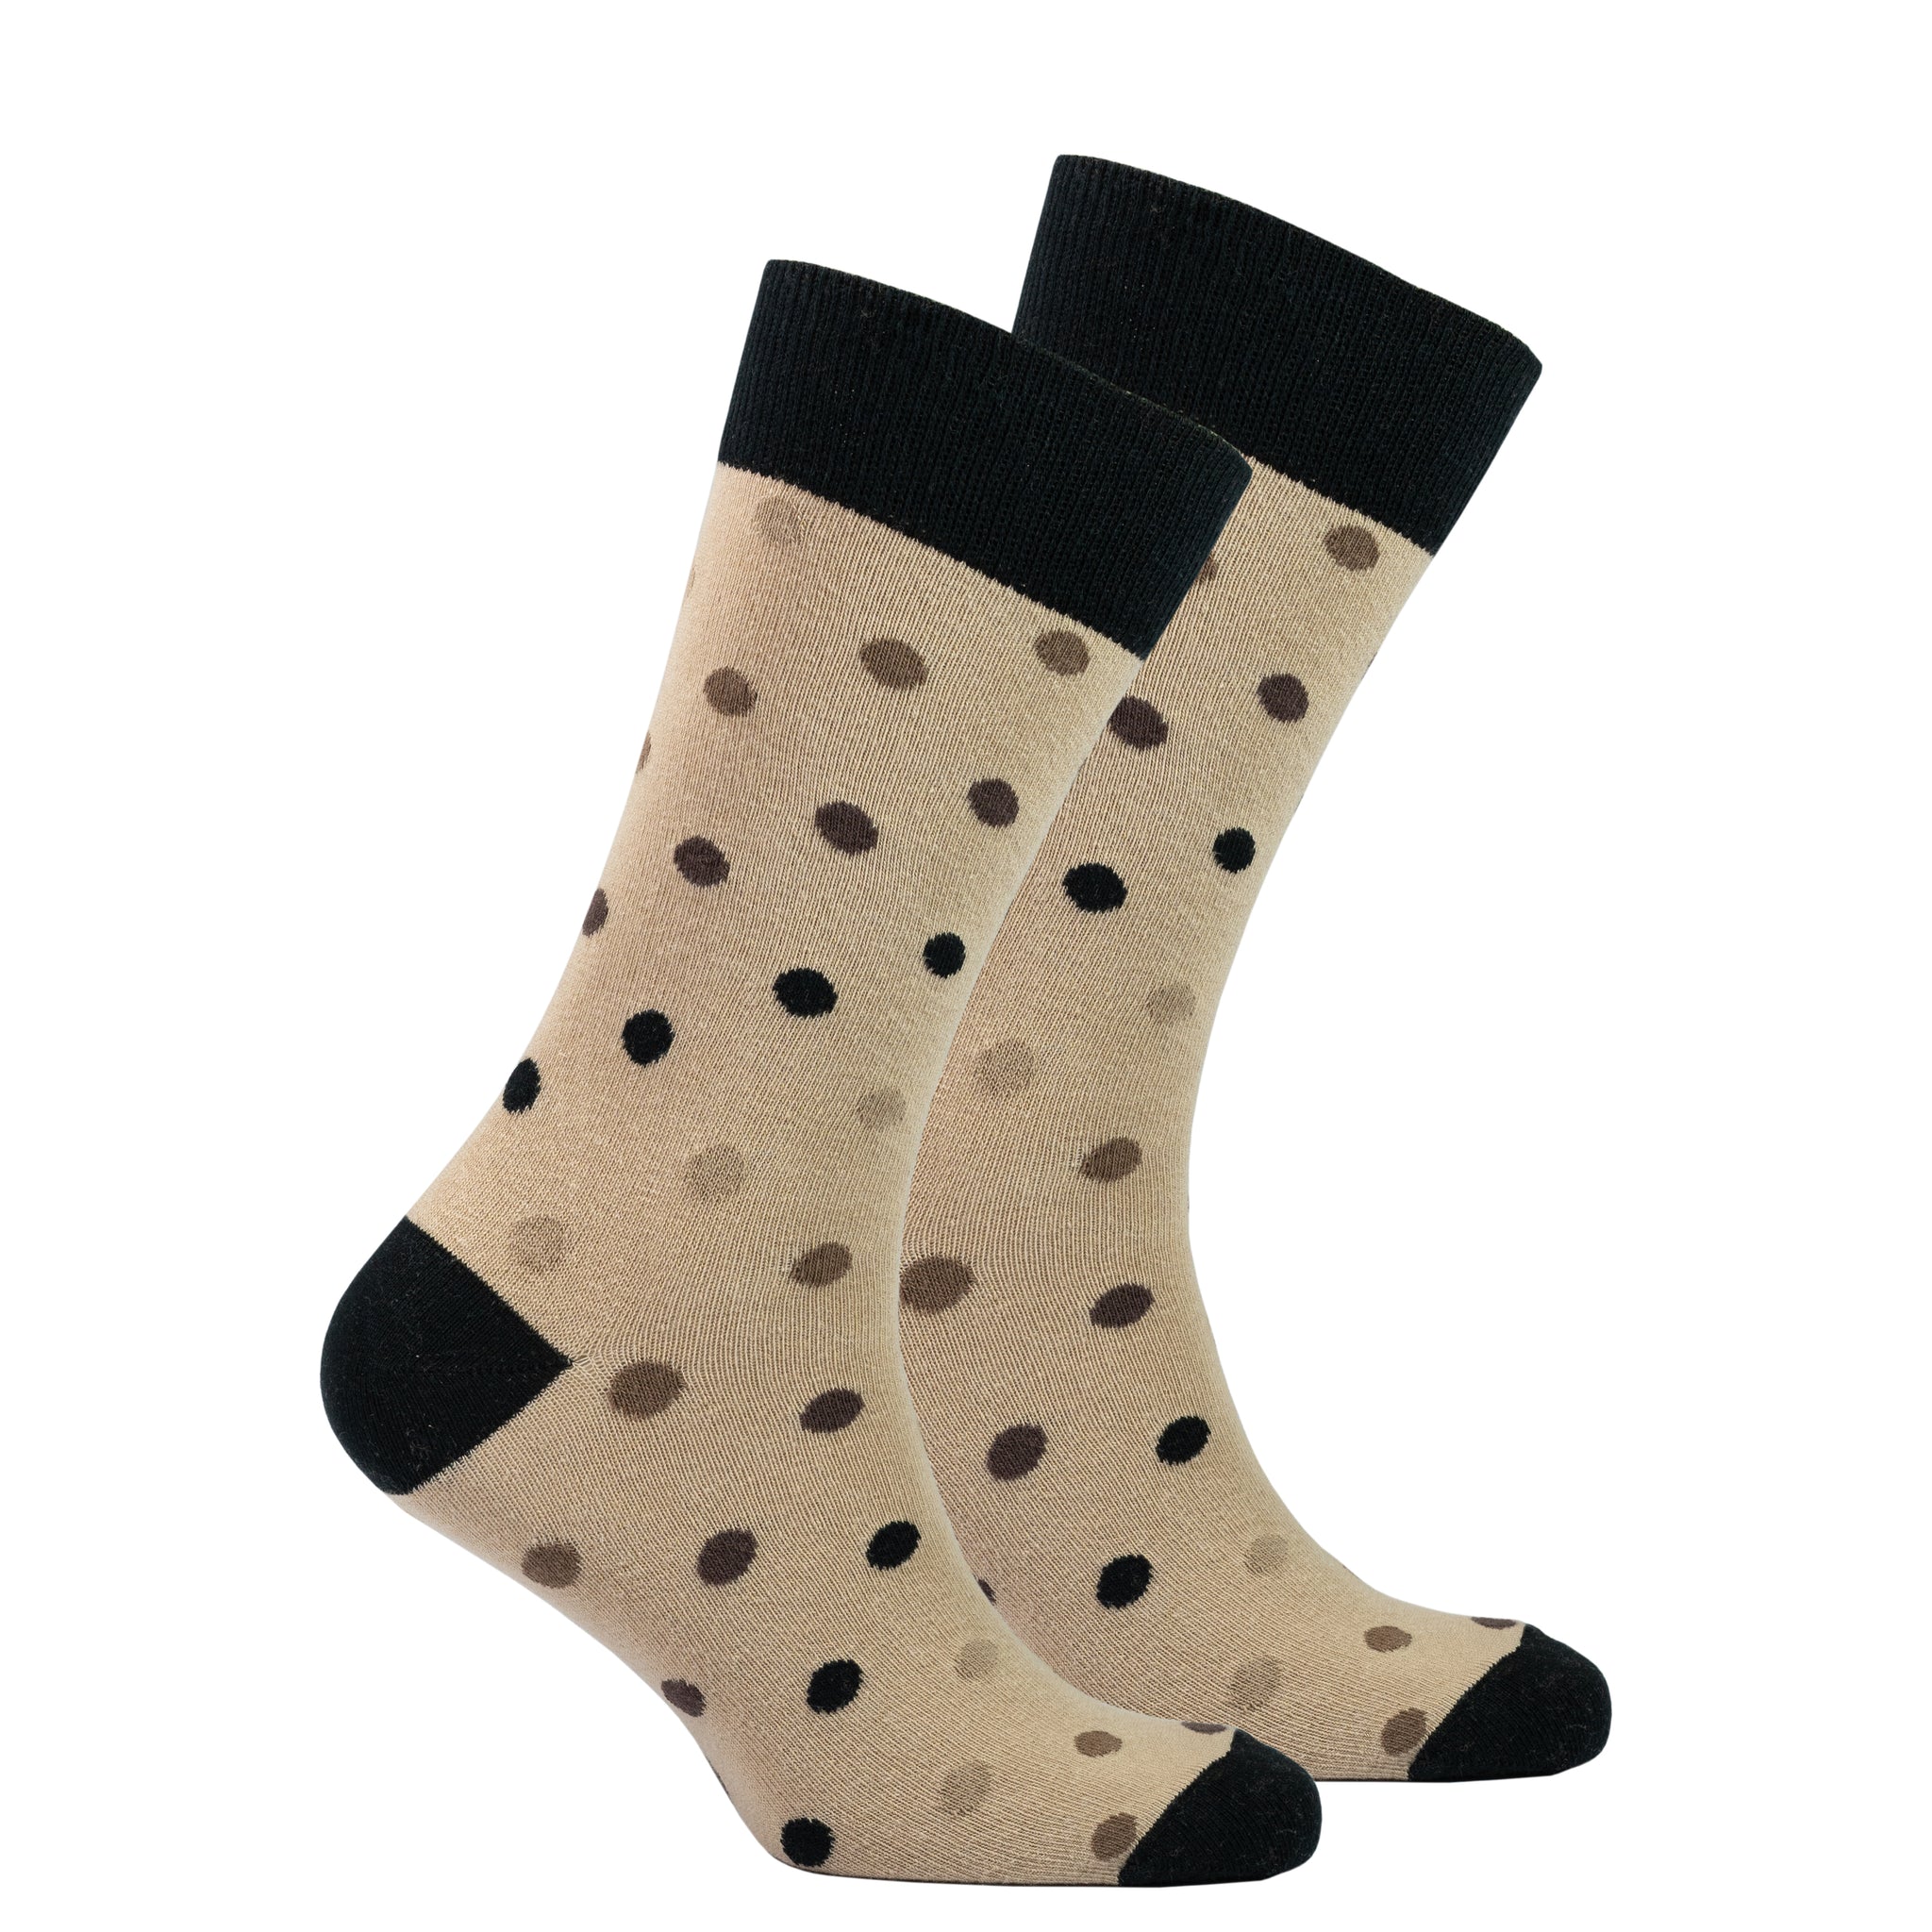 Men's Sand Dot Socks brown and black